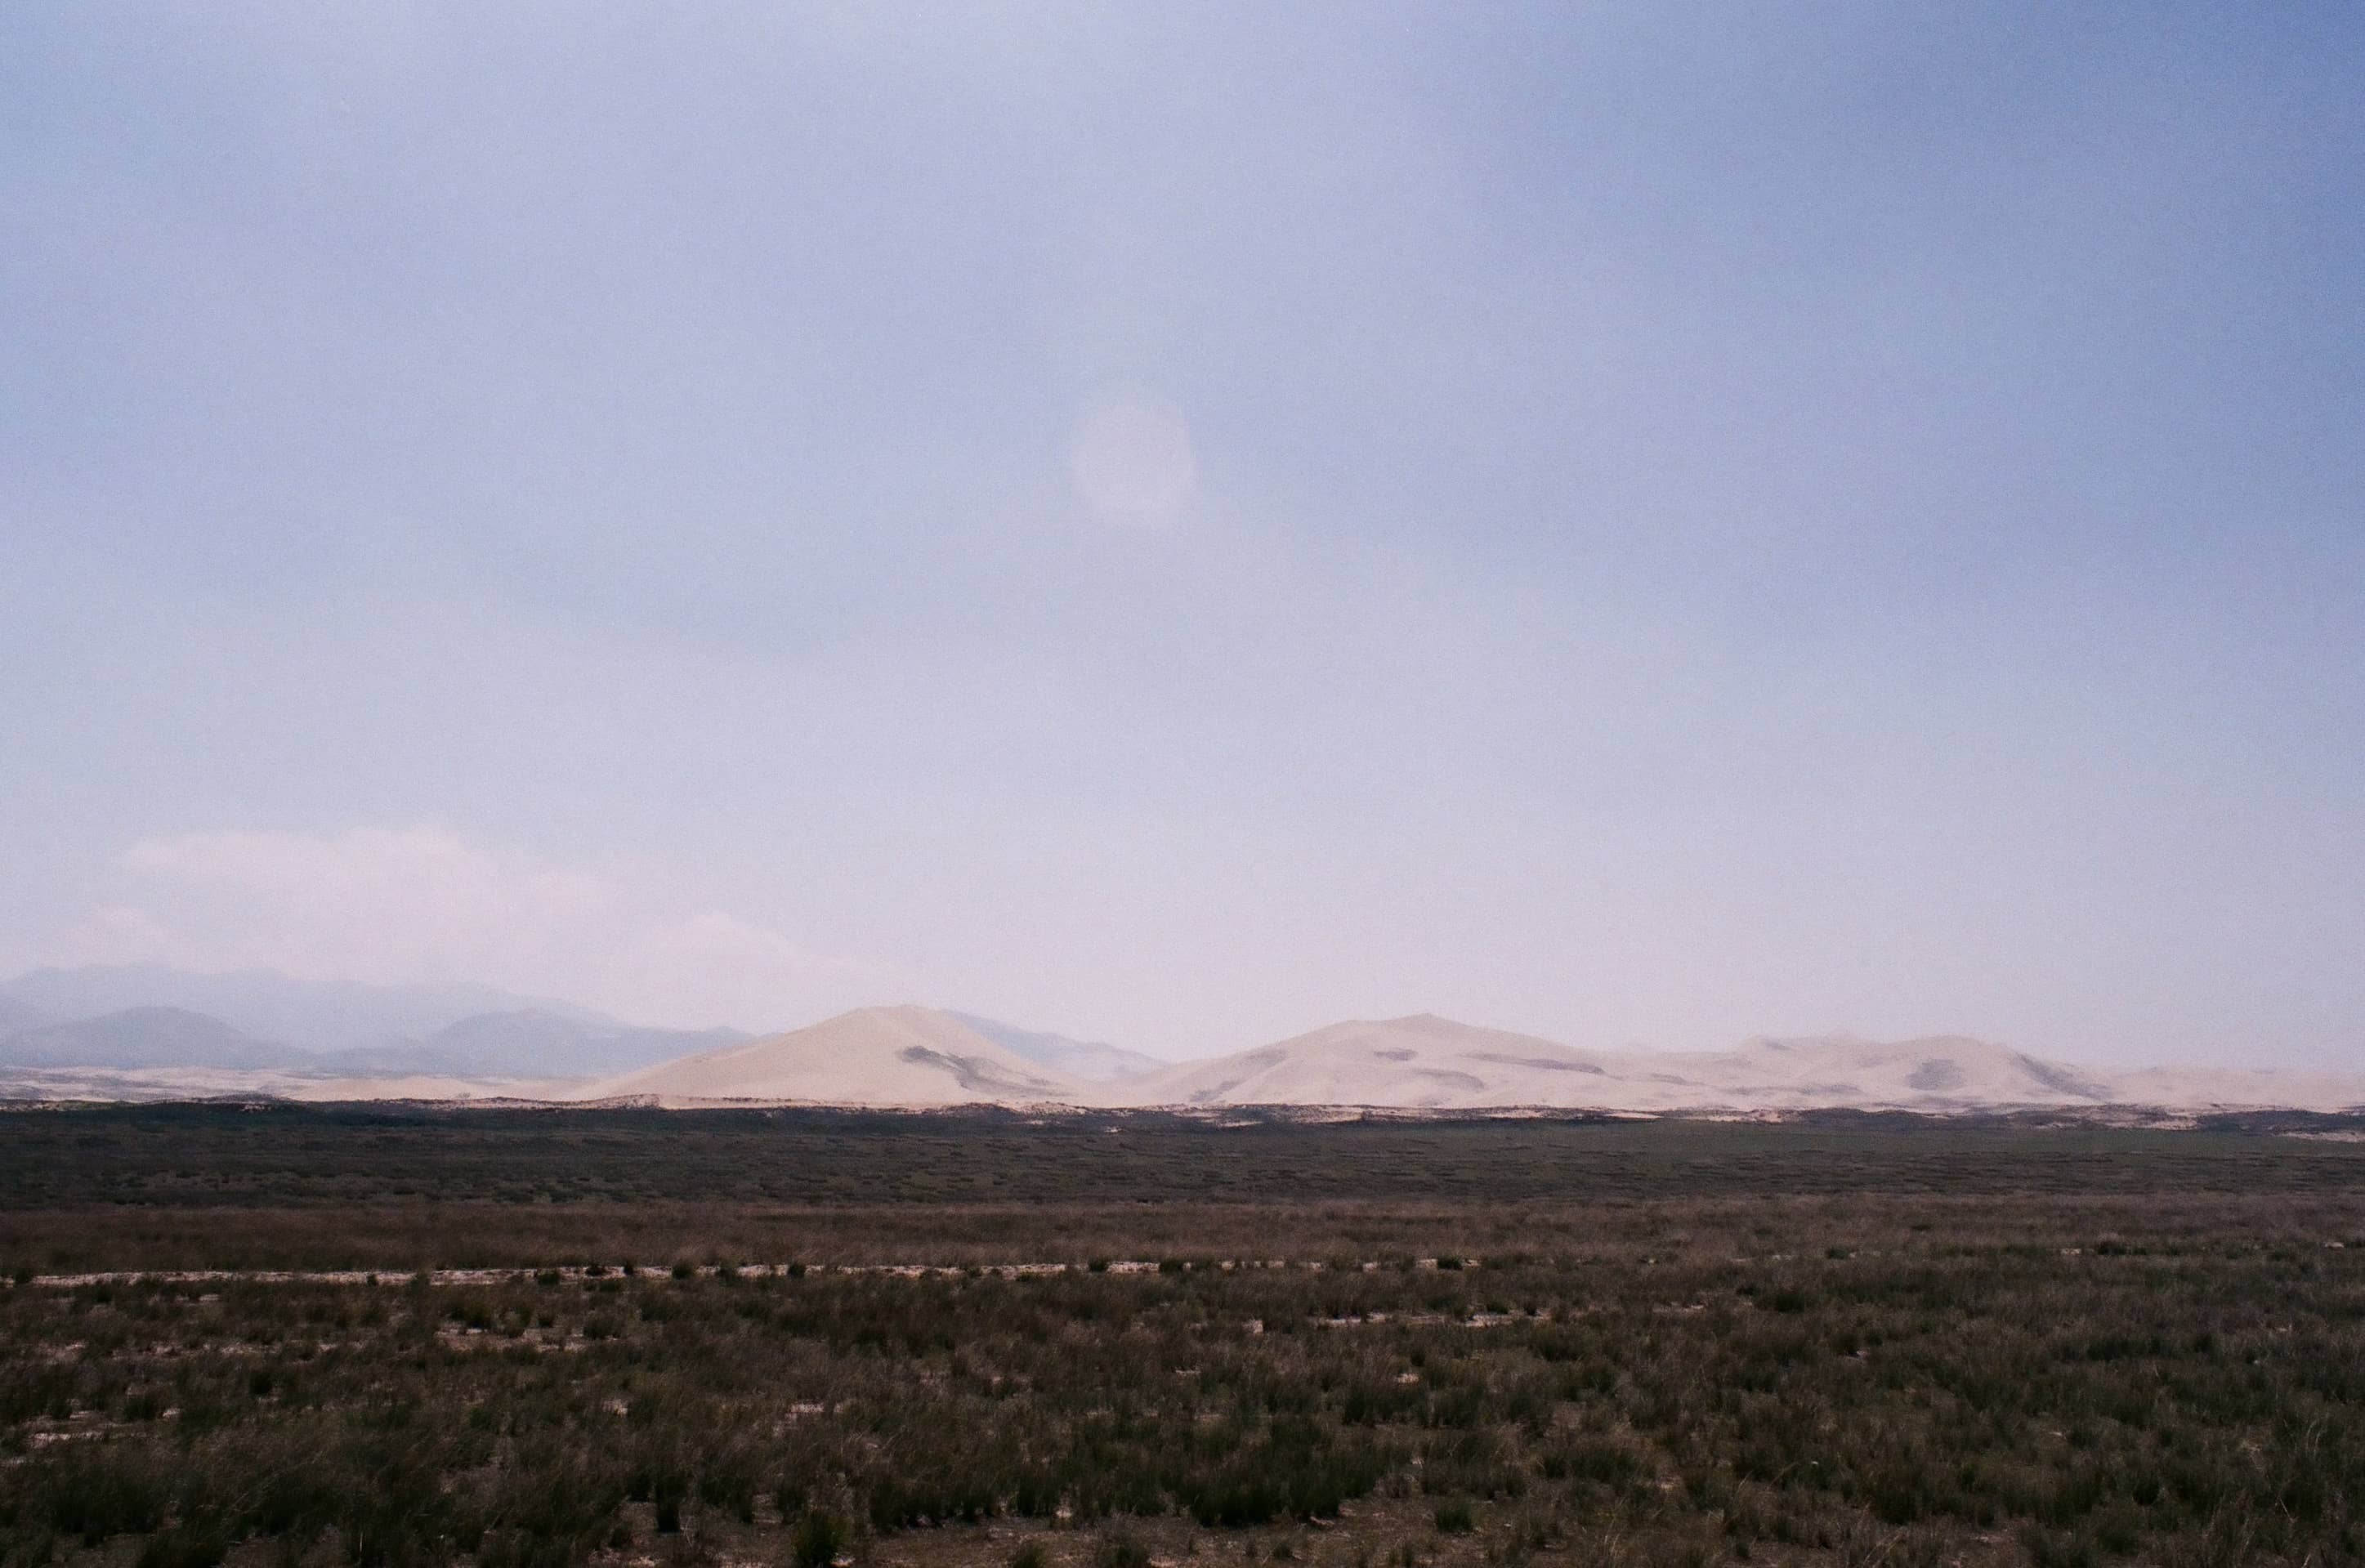 Qinghai desert